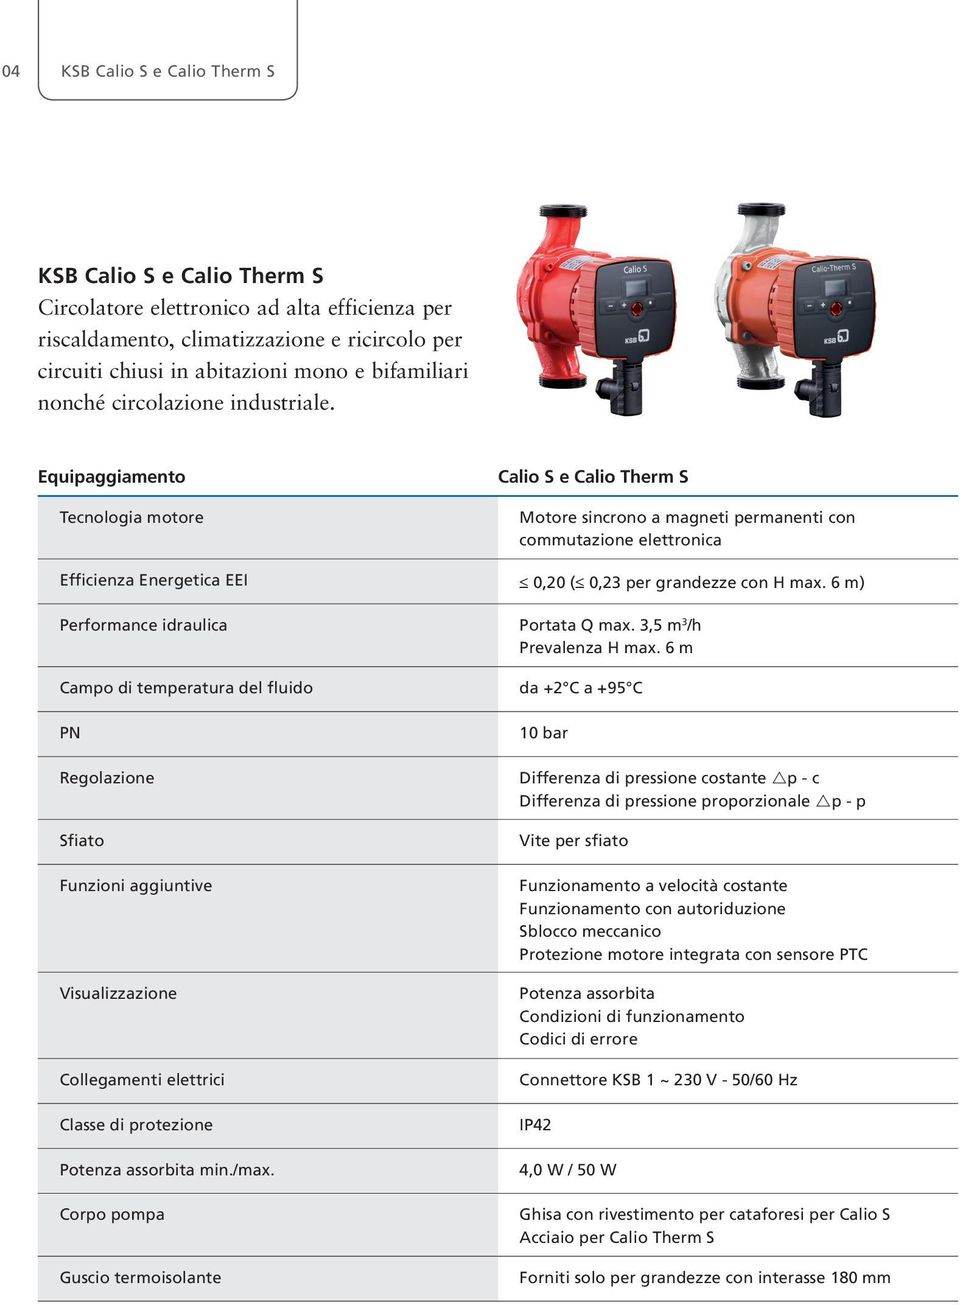 Equipaggiamento Tecnologia motore Calio S e Calio Therm S Motore sincrono a magneti permanenti con commutazione elettronica Efficienza Energetica EEI 0,20 ( 0,23 per grandezze con H max.